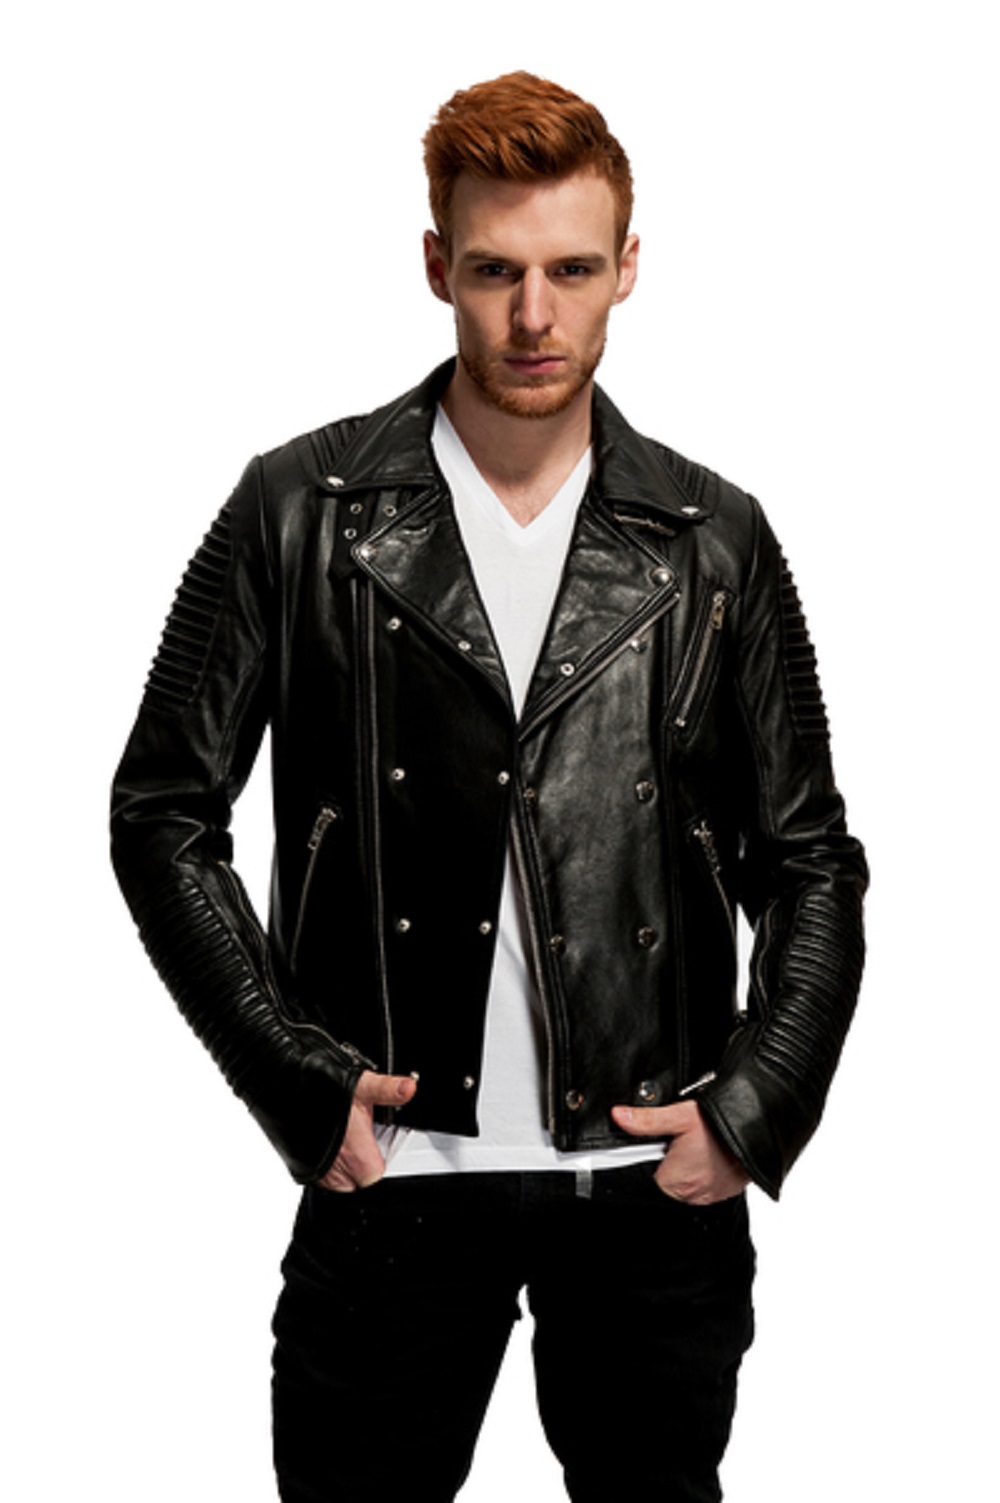 Mason & Cooper Empire Leather Moto Jacket - image 1 of 4